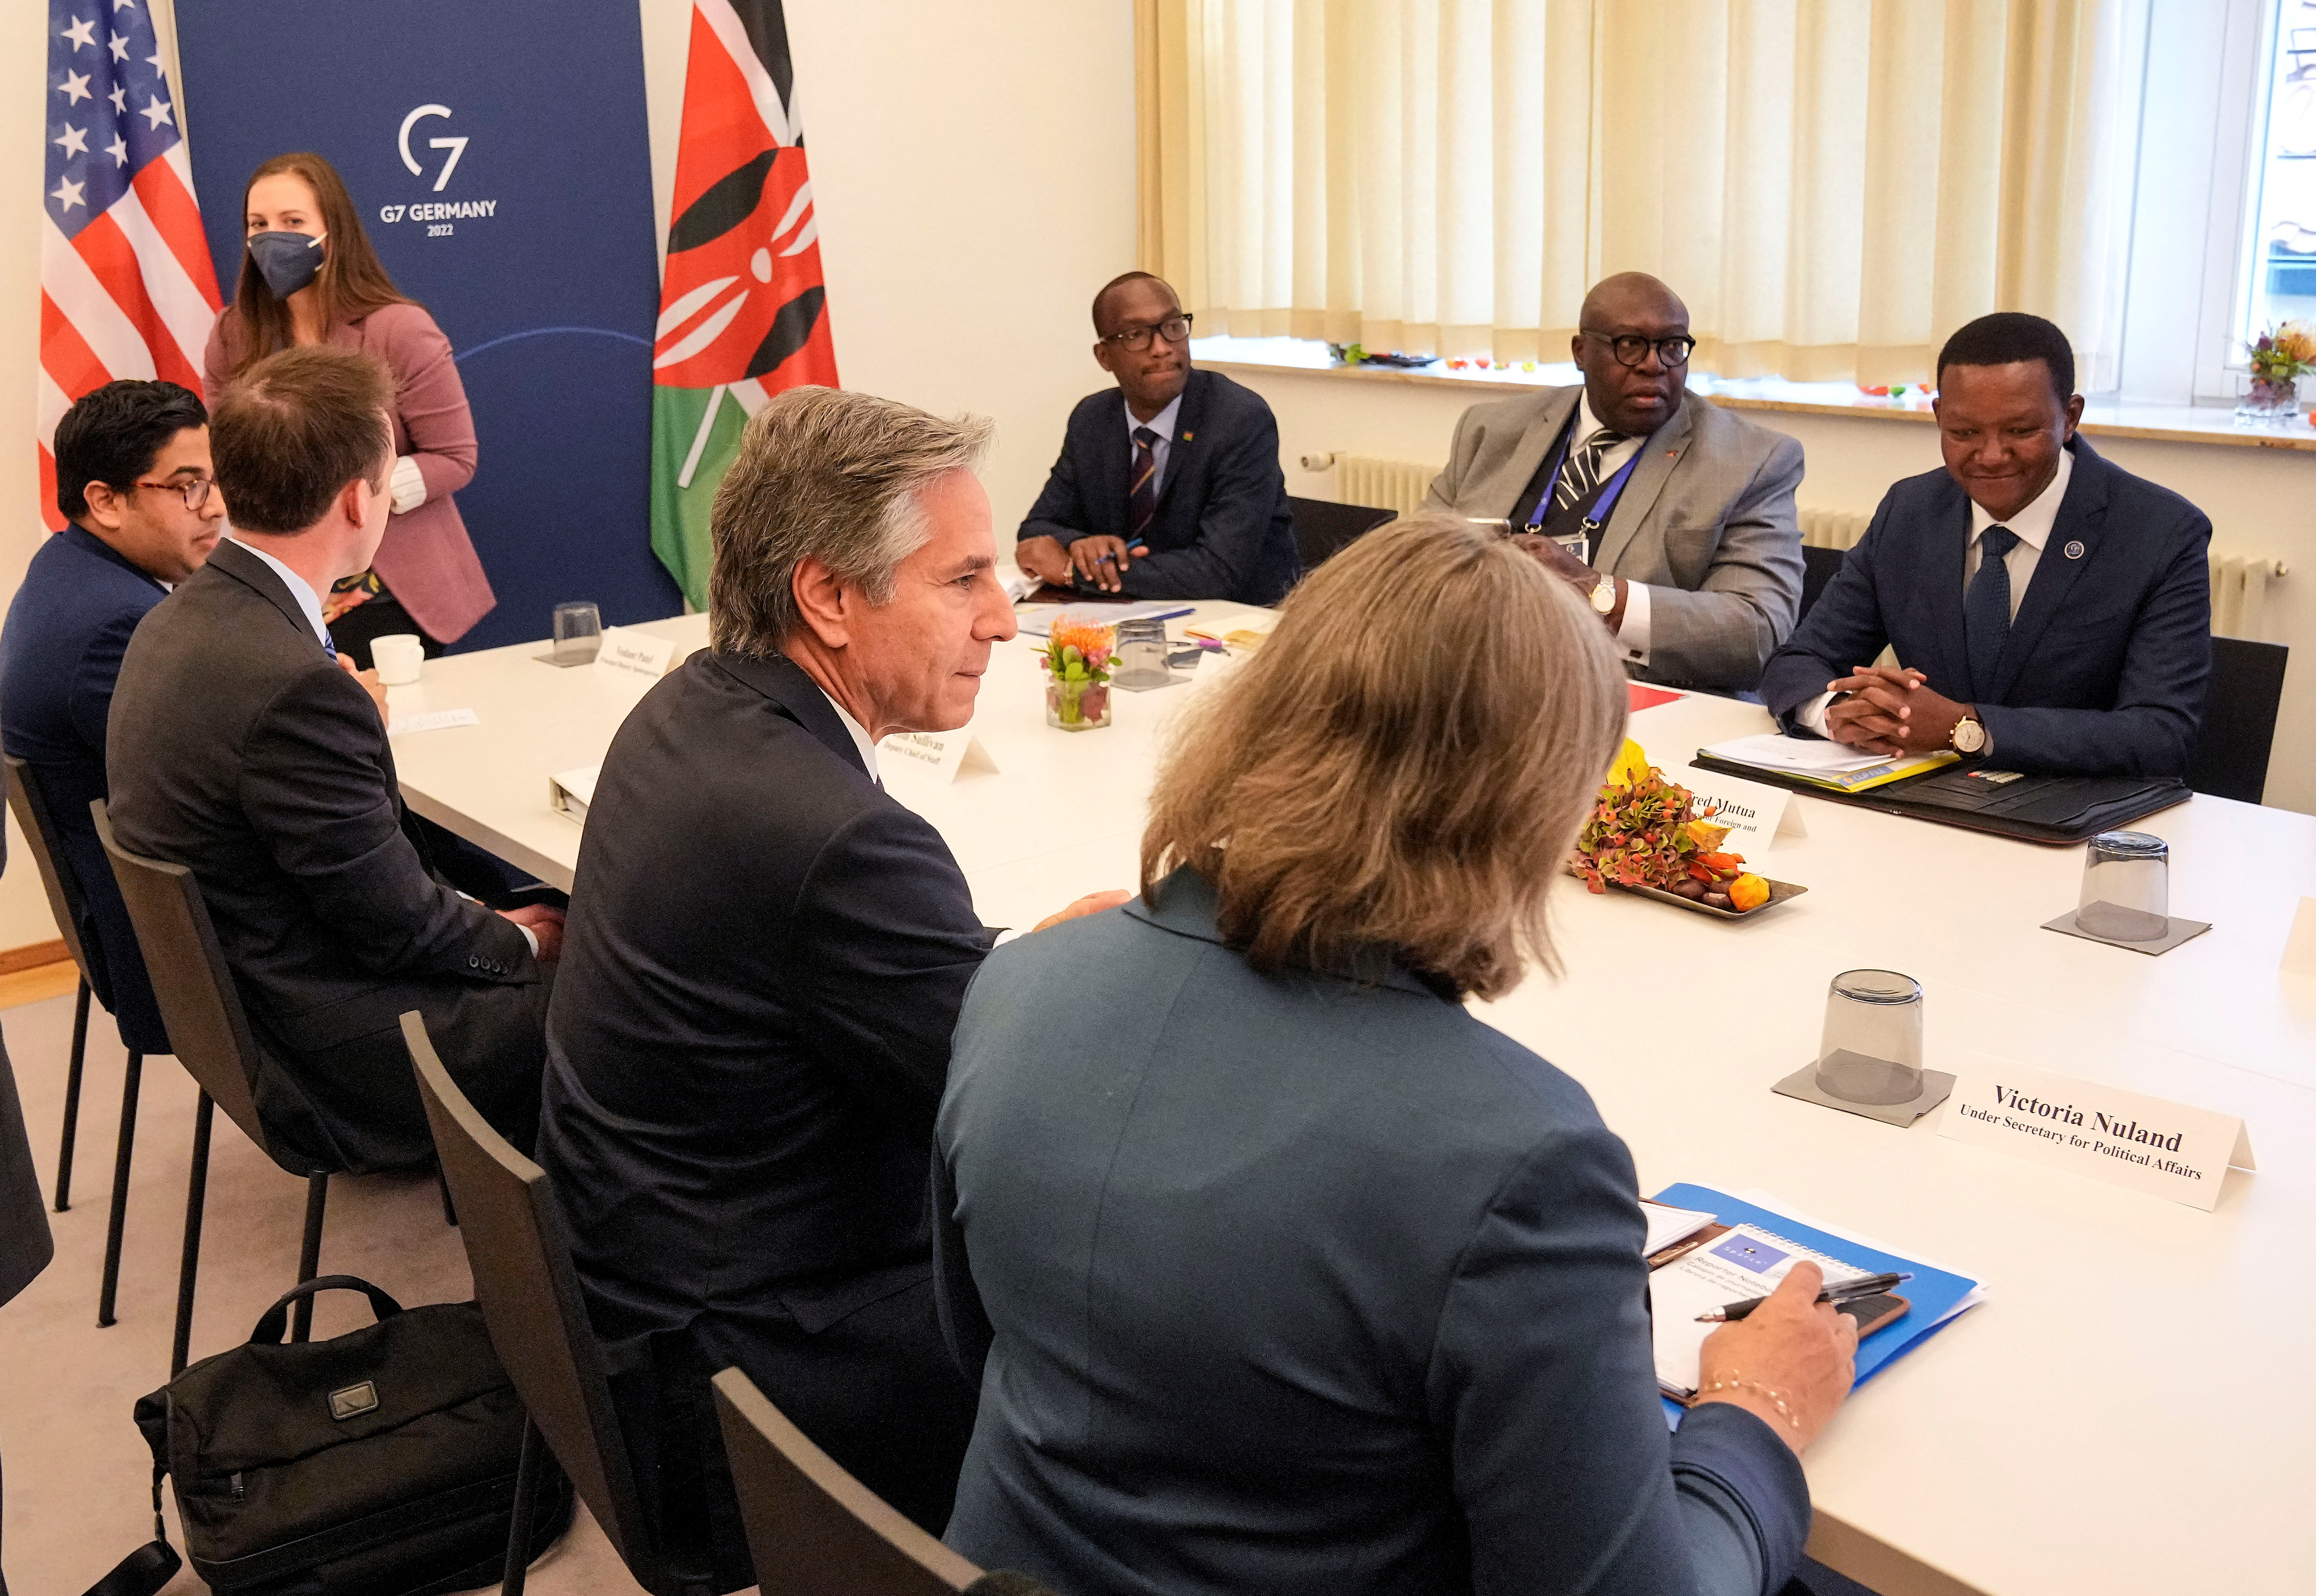 El secretario de Estado norteamericano Antony Blinken dialoga con su par del comité keniata de Asuntos Exteriores Alfred Mutua durante un encuentro bilateral en el marco de la reunión del G7 en Muenster (Martin Meissner/Pool via REUTERS)